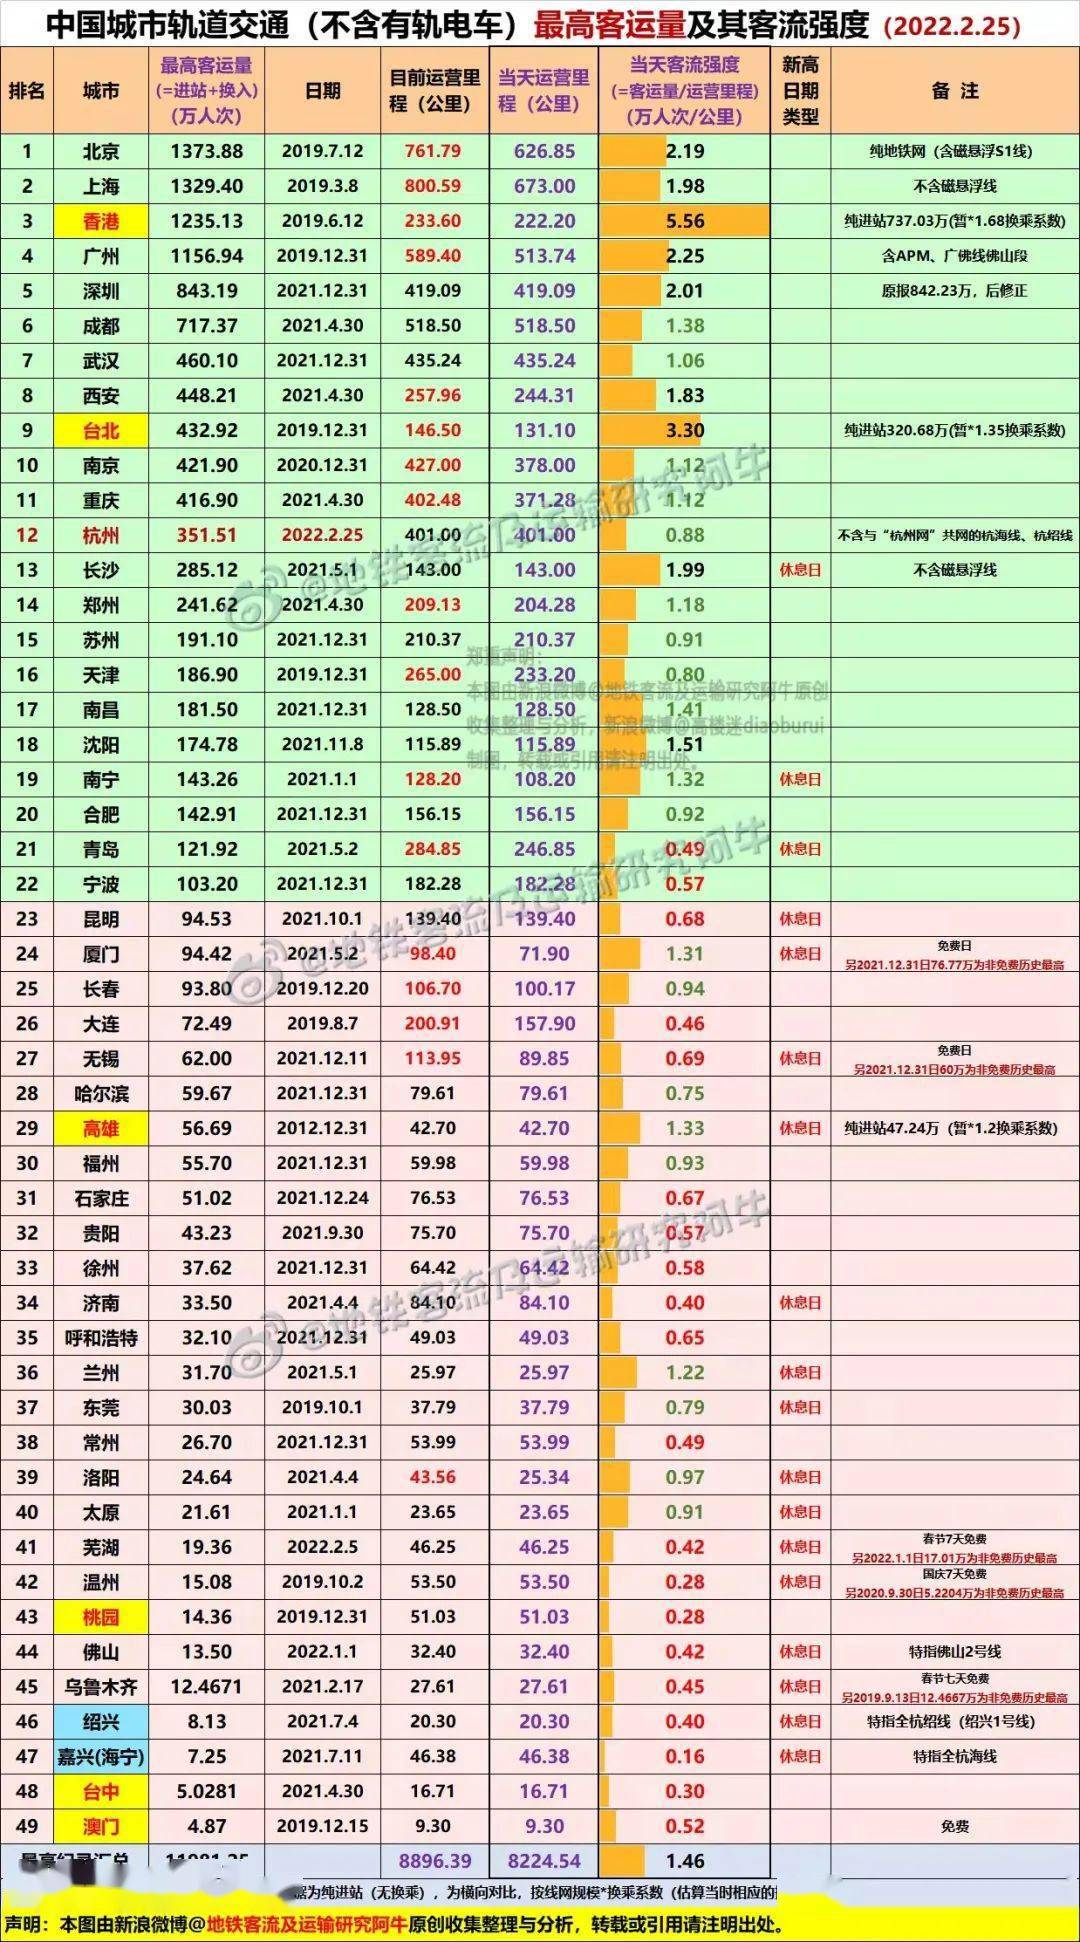 有合肥,哈尔滨,徐州,洛阳,芜湖5城创月度日均客运量历史新高(见下图7)